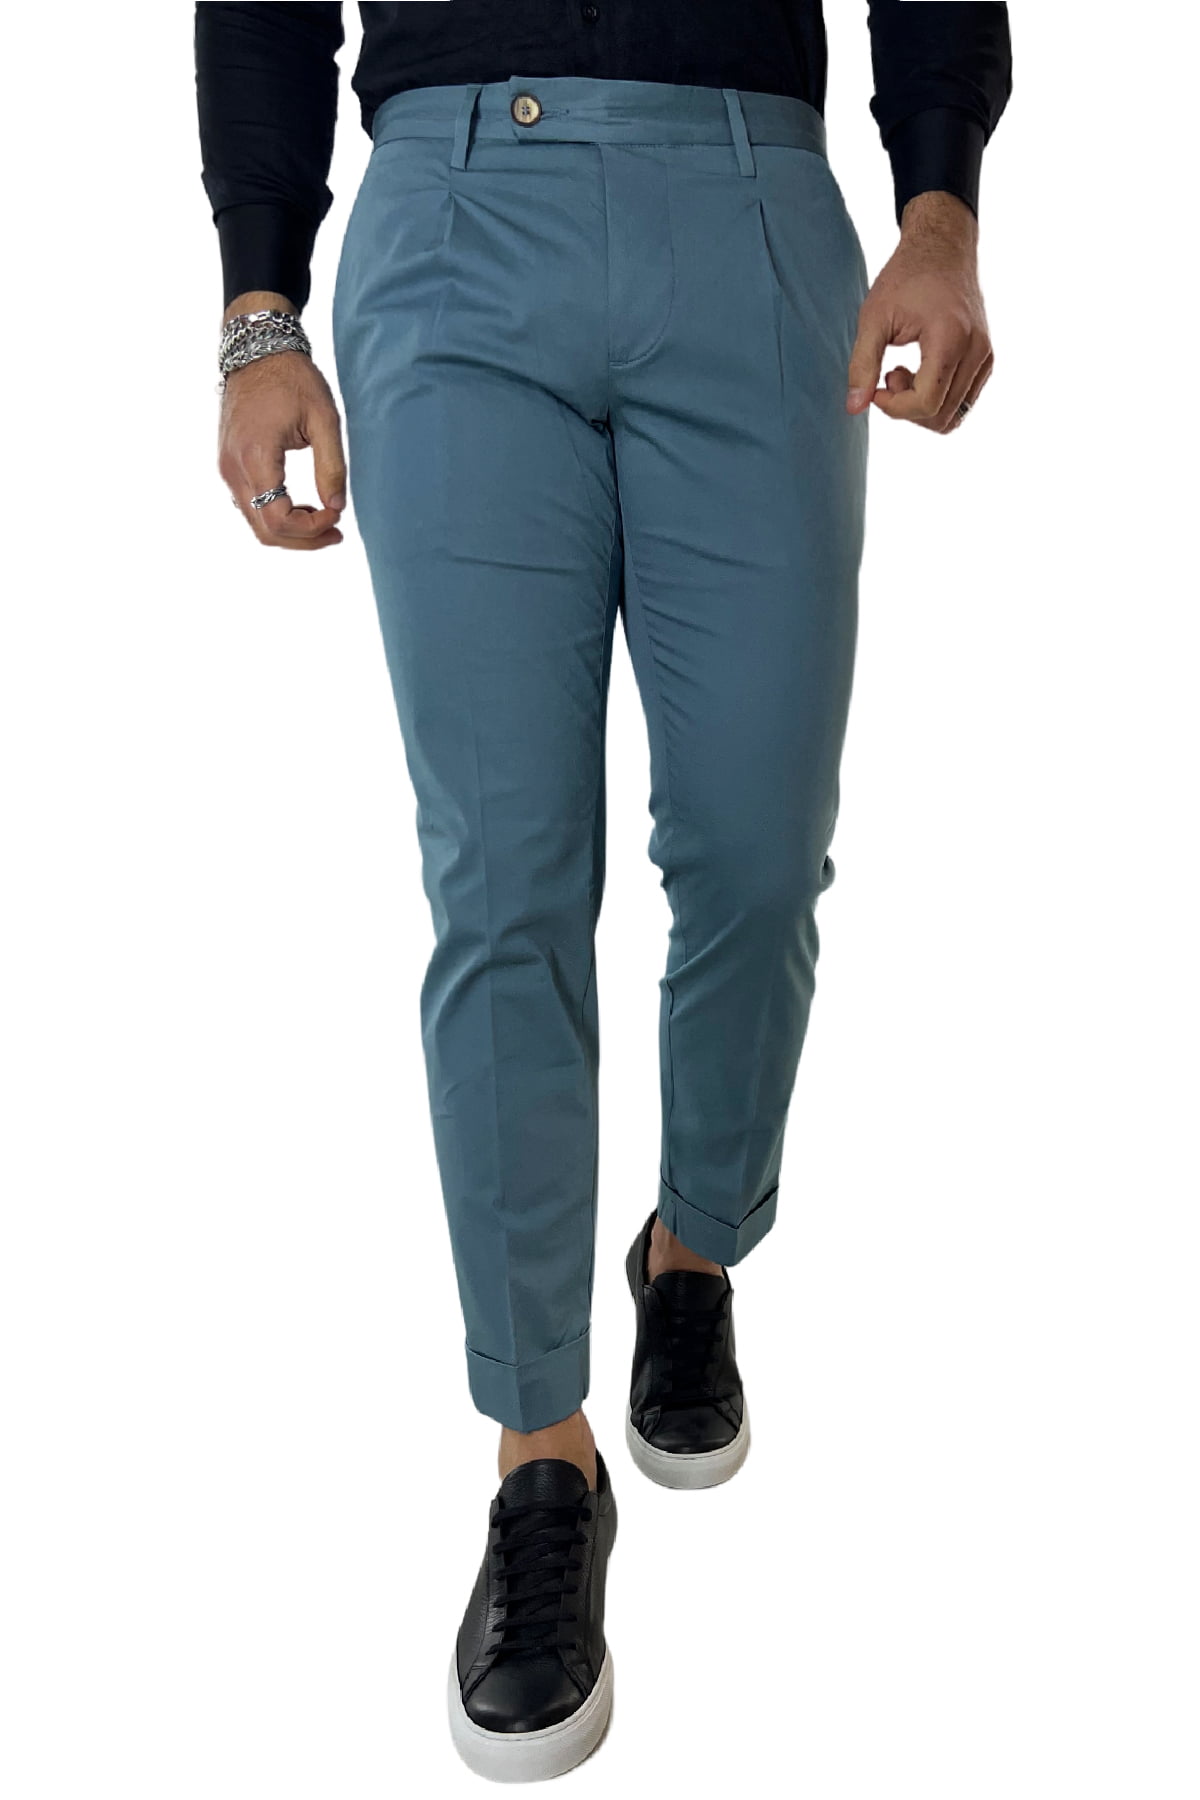 Abbigliamento Abbigliamento uomo Pantaloni Pantalone Abito Uomo Tailor Made Multi Color 